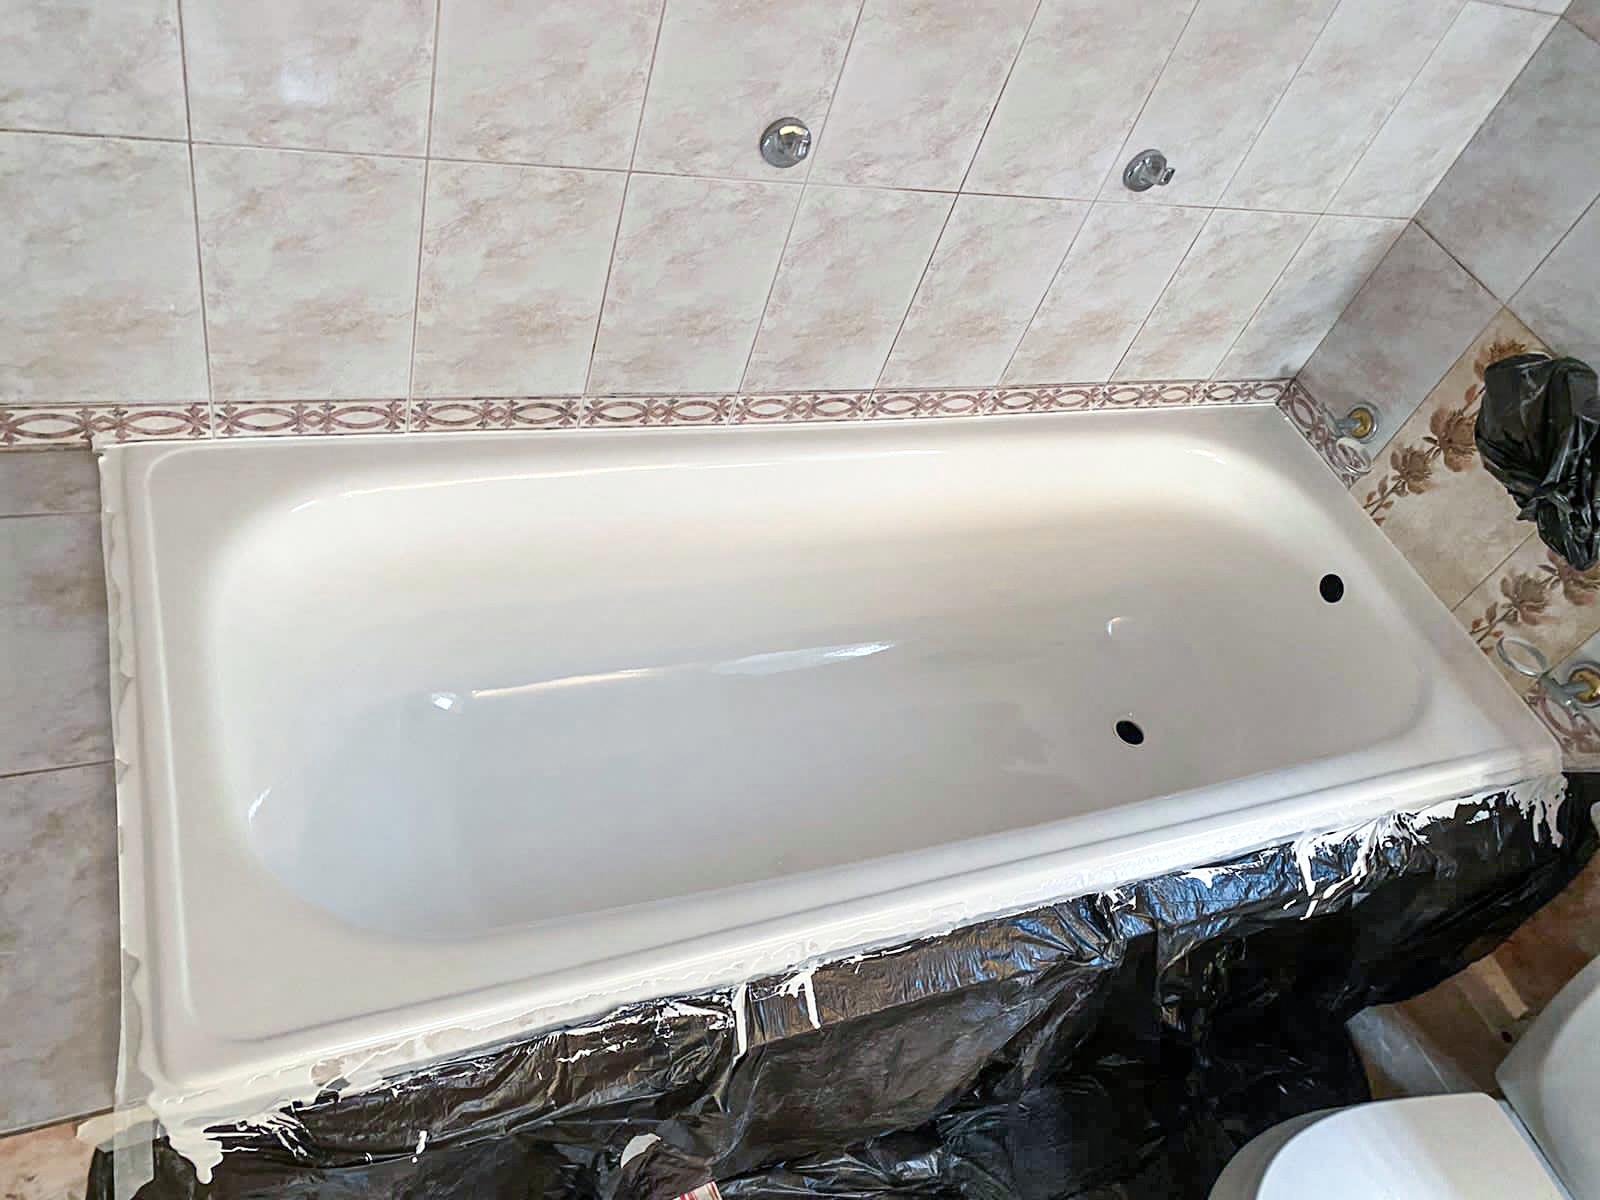 Реставрация ванн Воронеж. Немецкое качество реставрации ванны в вашем городе!